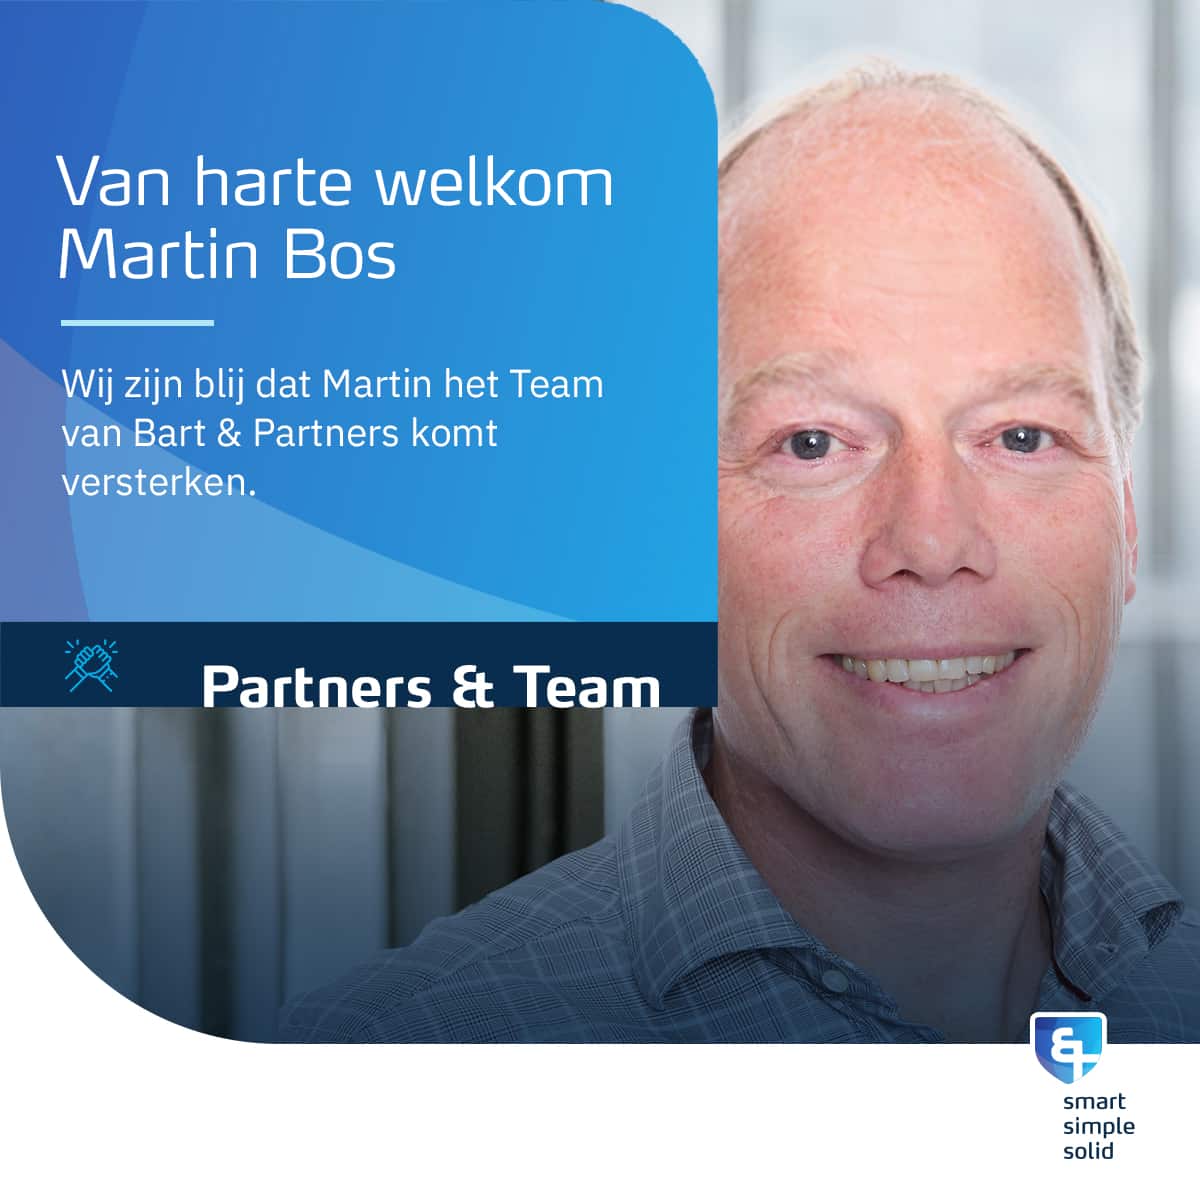 Van harte welkom – Martin Bos